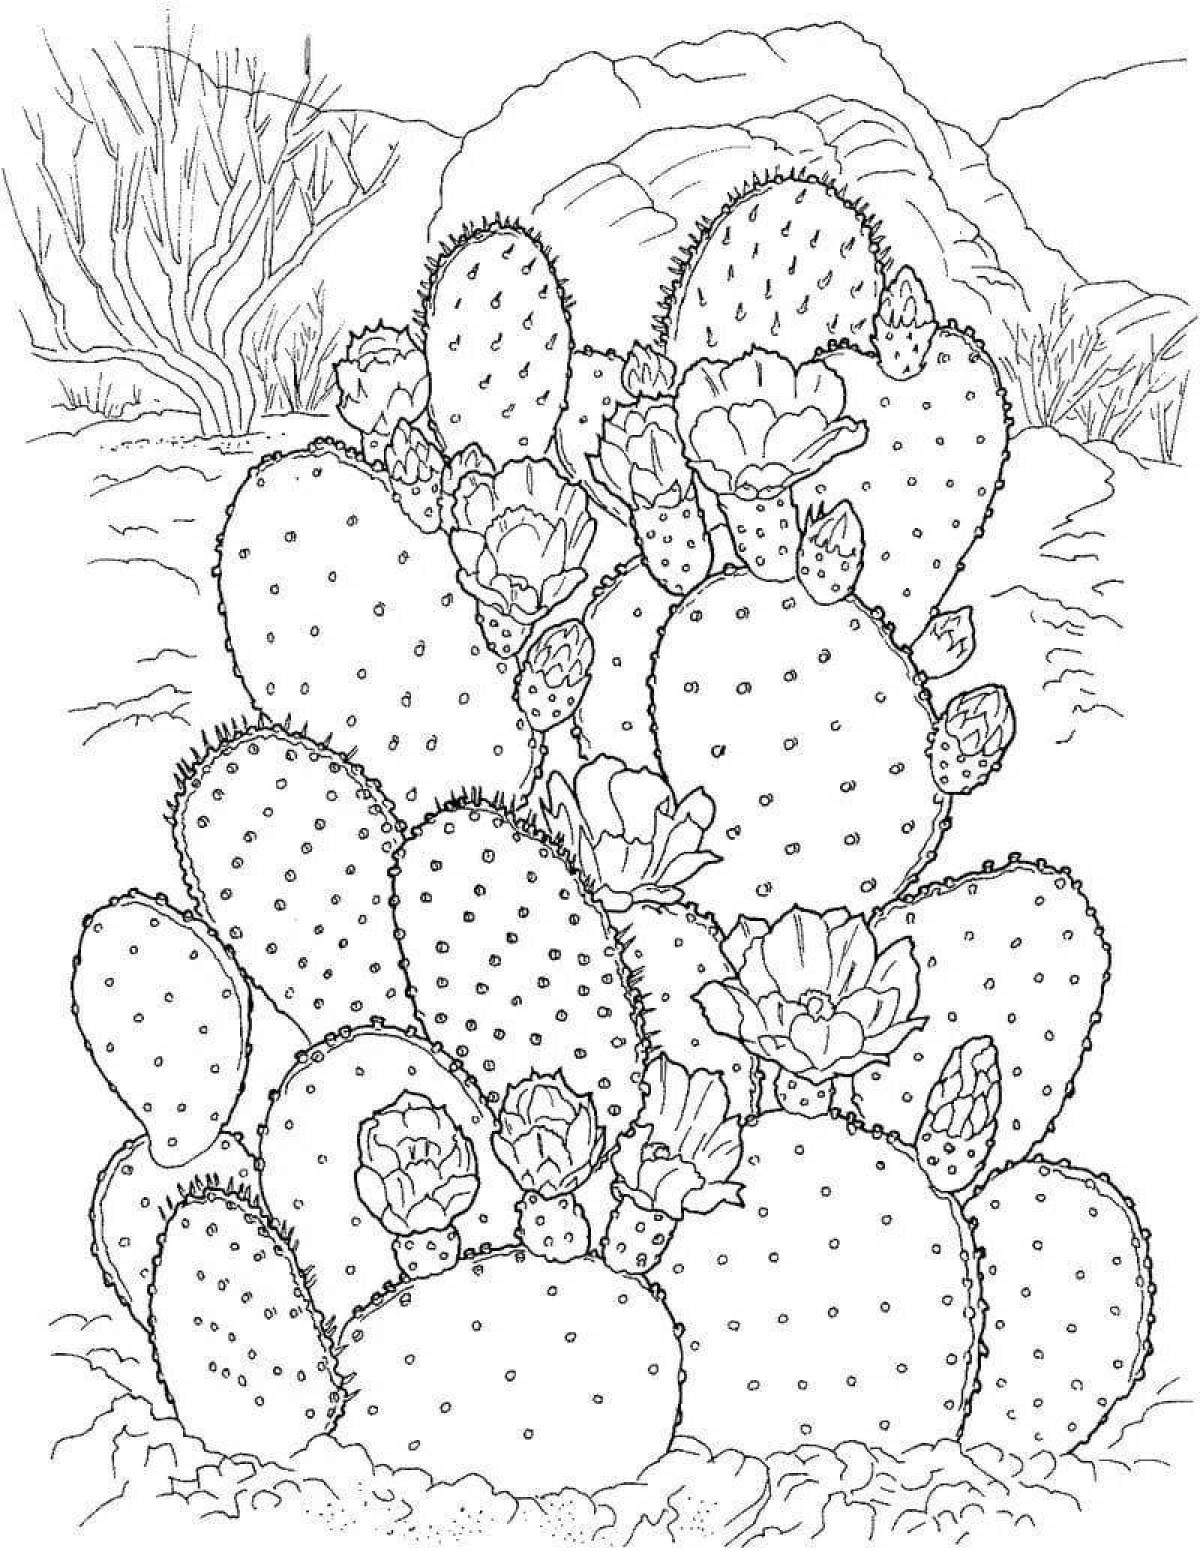 Inspirational cactus coloring book